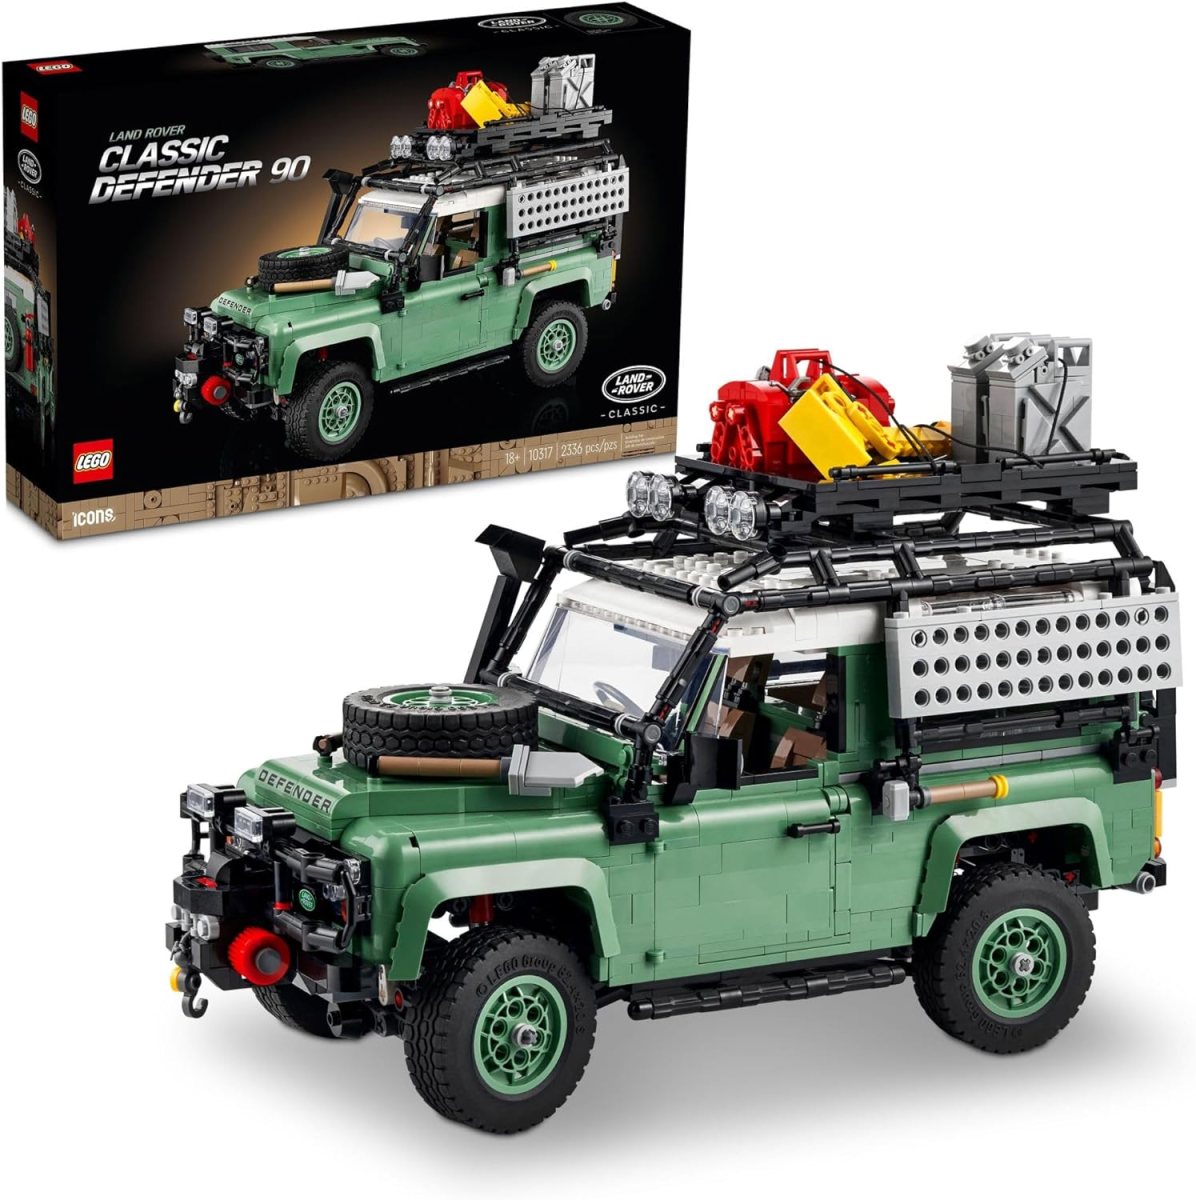 Land Rover LEGO set.